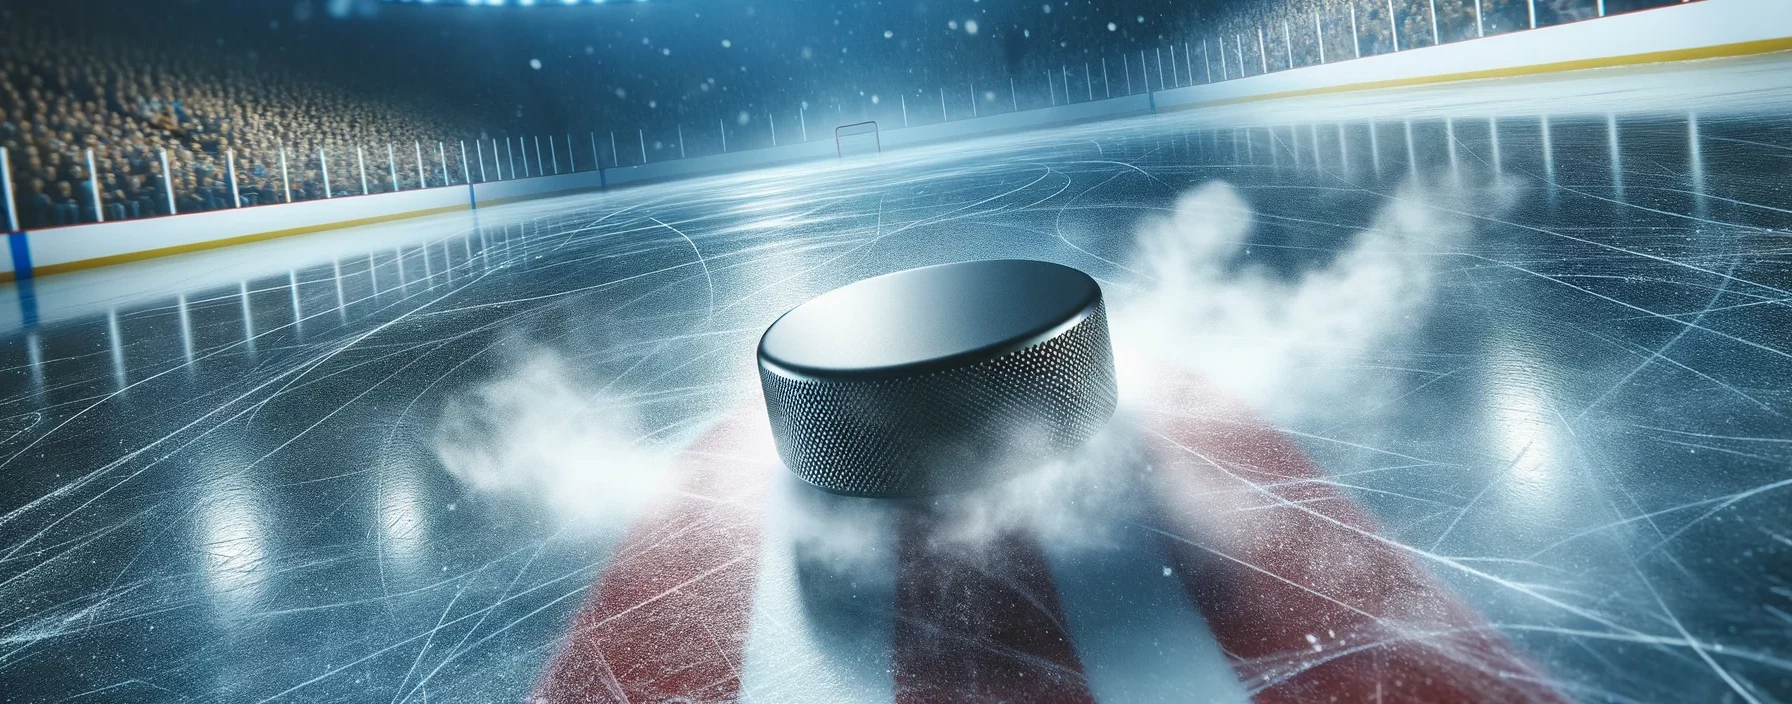 Foto eines Eishockey-Pucks, der schnell über eine glatte Eisfläche gleitet, wobei kalter Dampf vom Eis aufsteigt